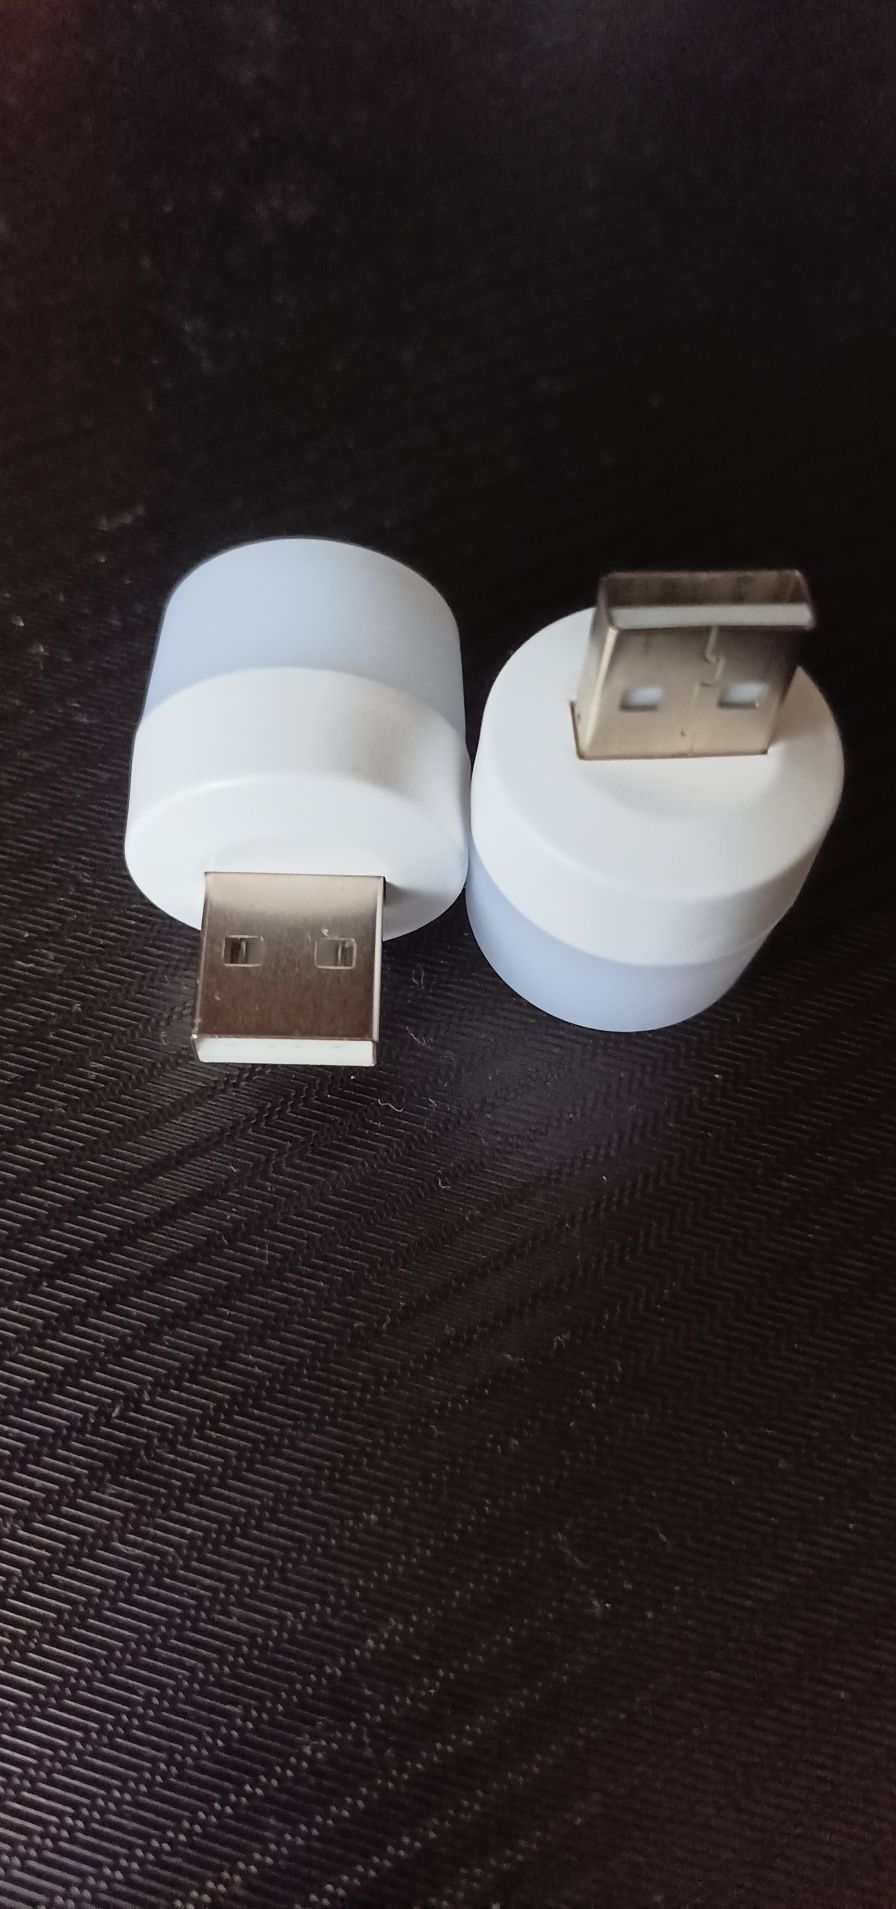 LED-лампочка/светильник с USB-разъёмом (5V)